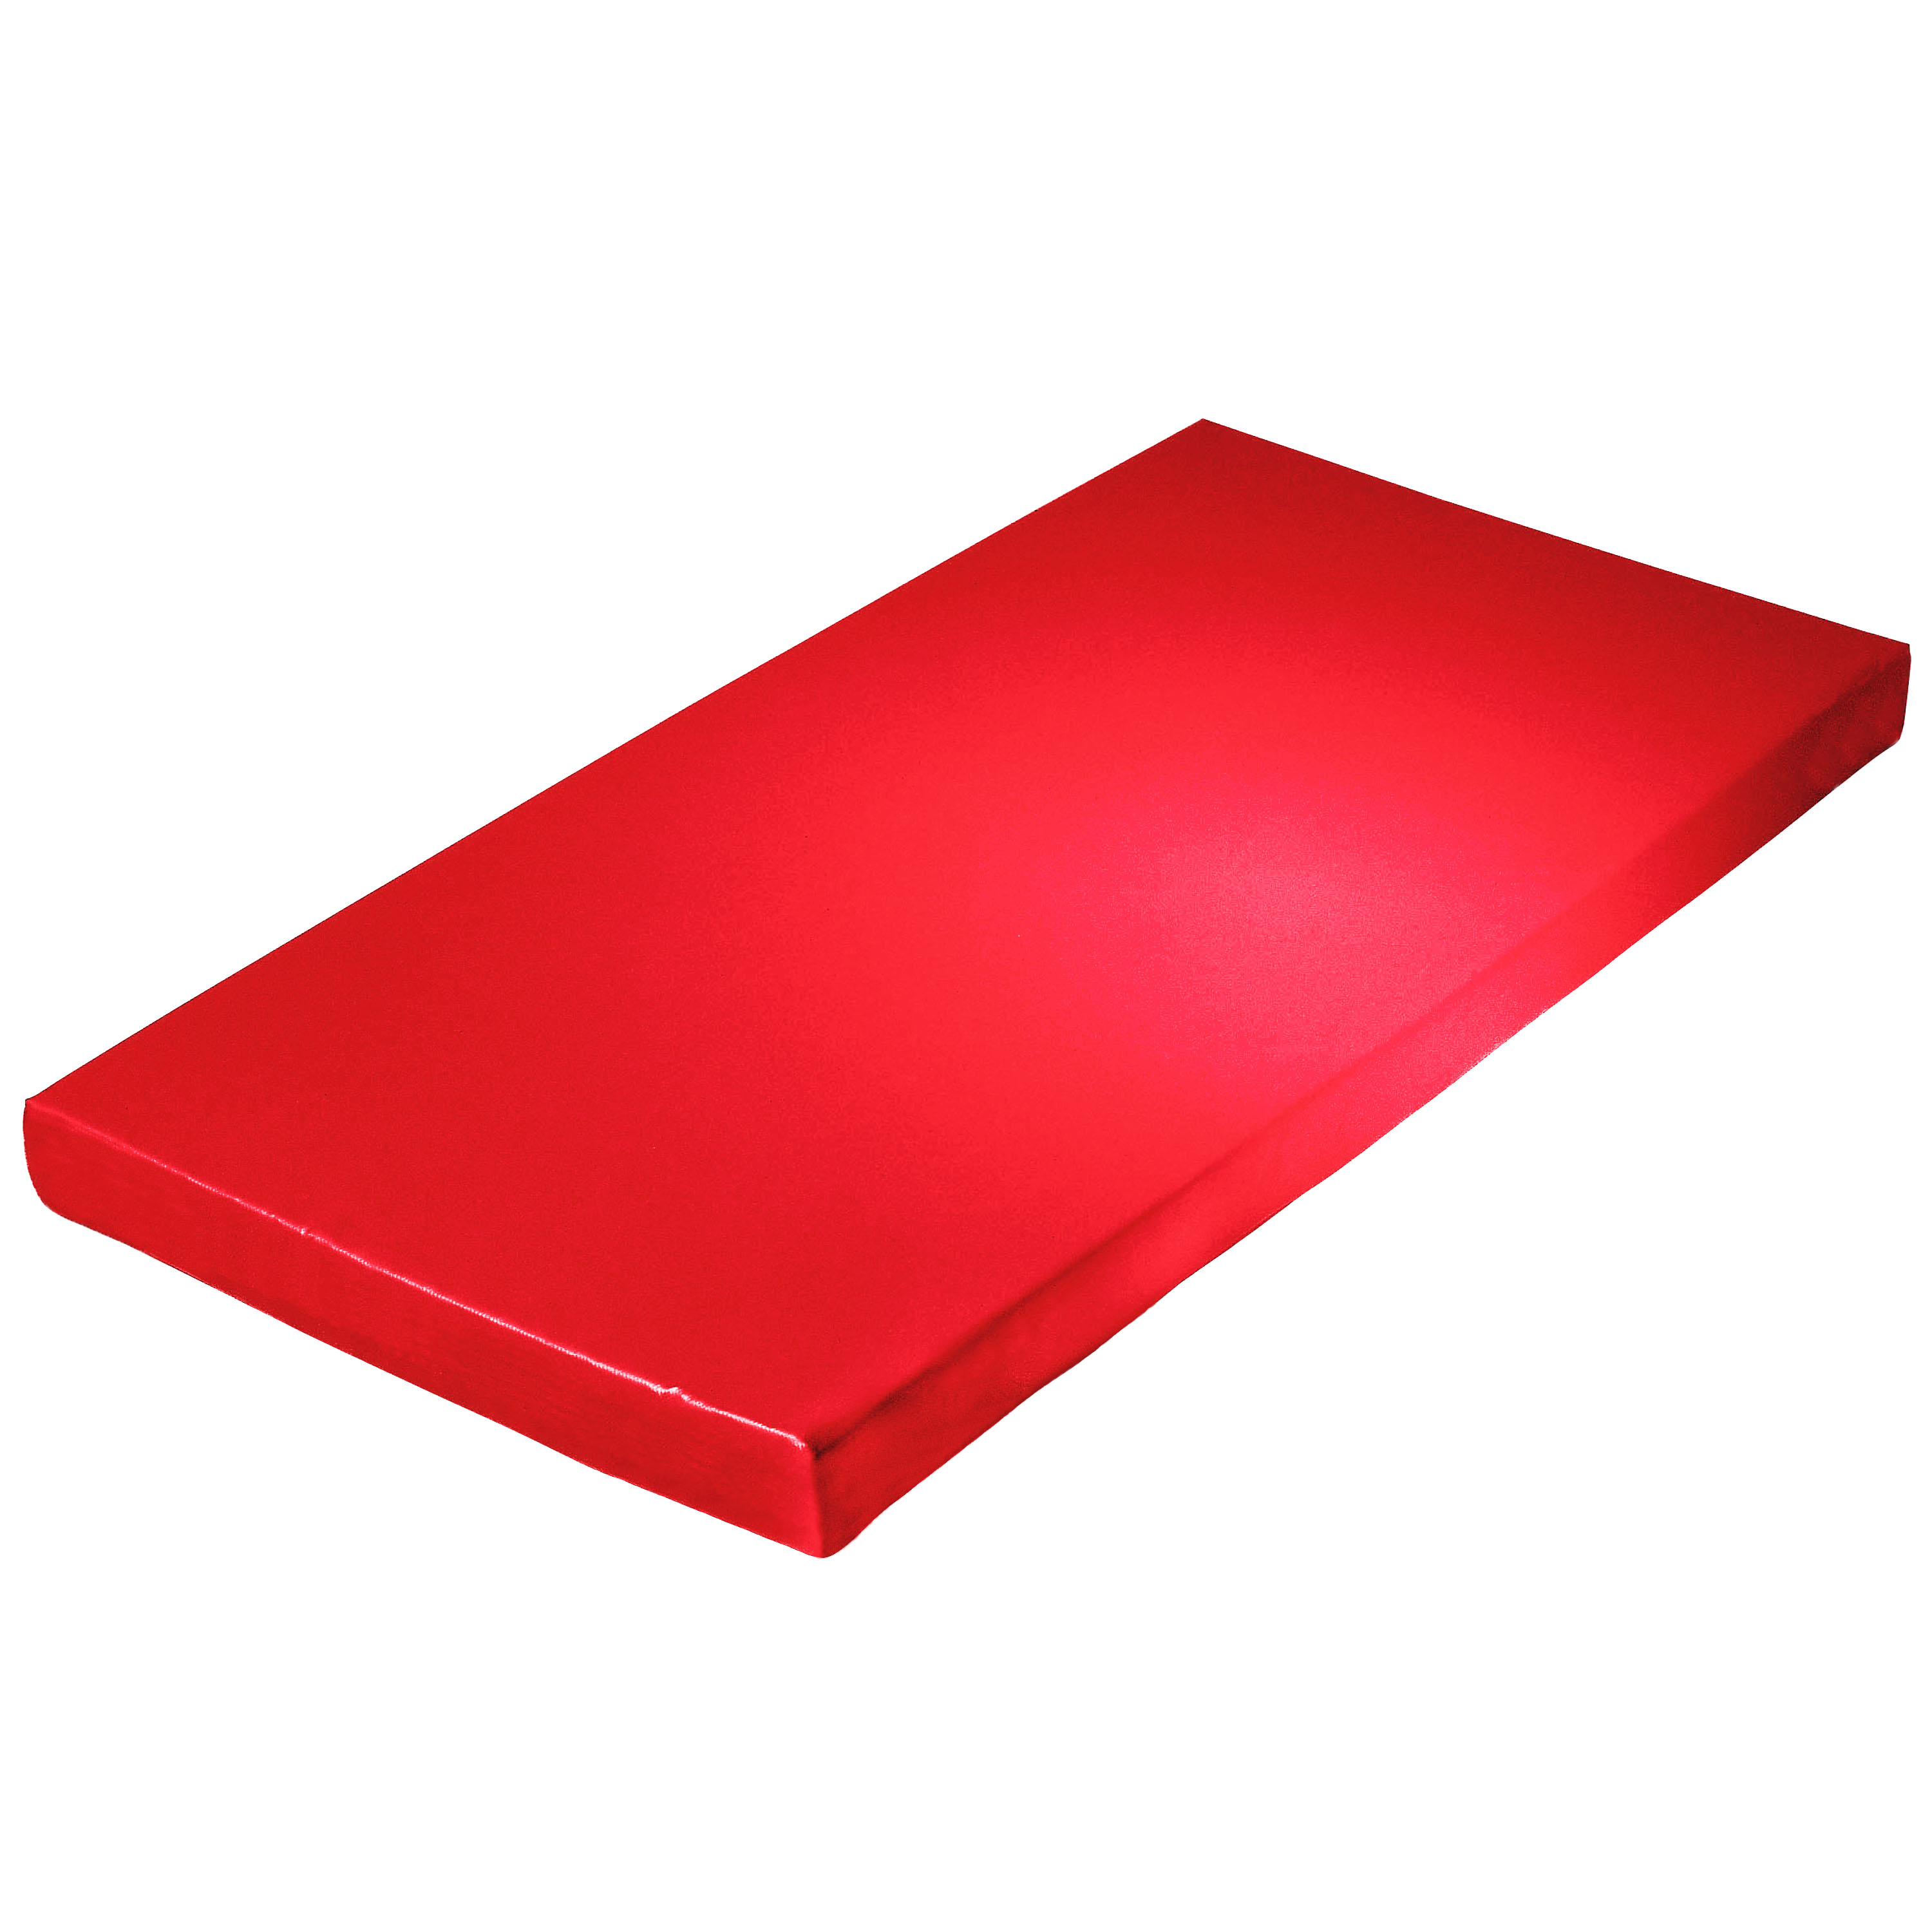 Super-Leichtturnmatte 200 x 100 x 6 cm, rot